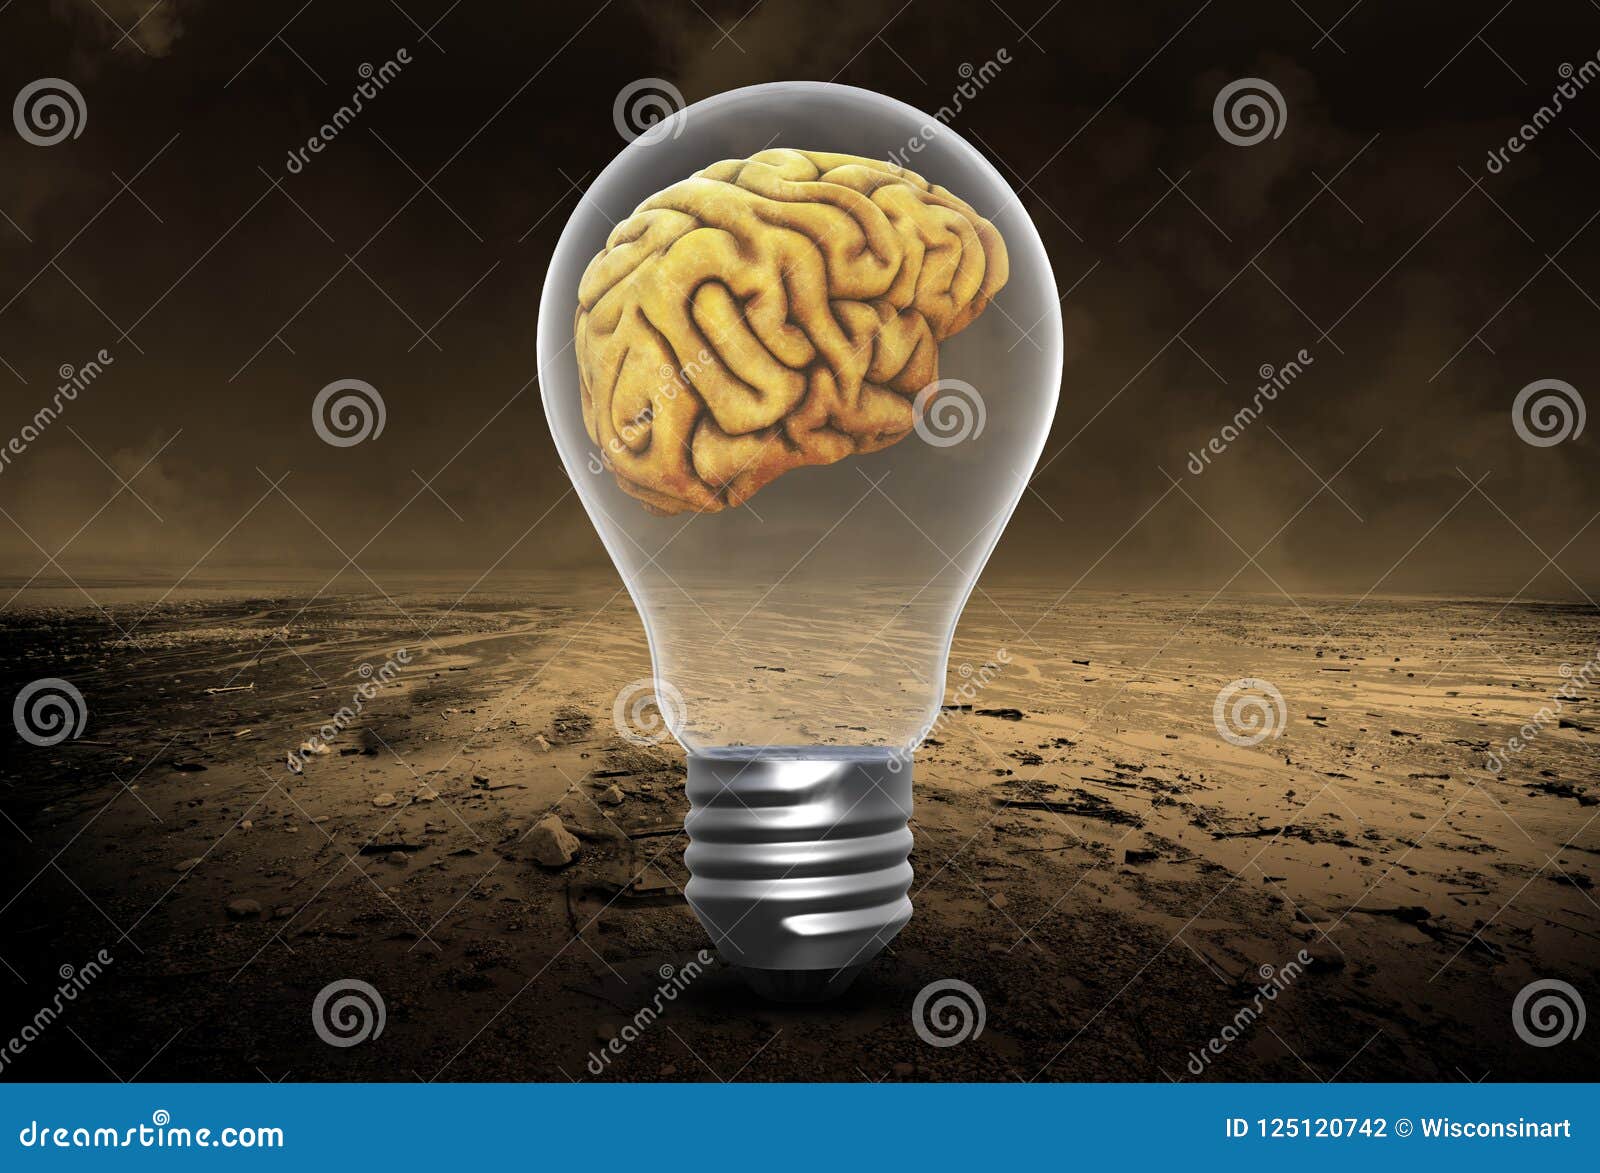 ideas, brains, innovation, success, goals, business